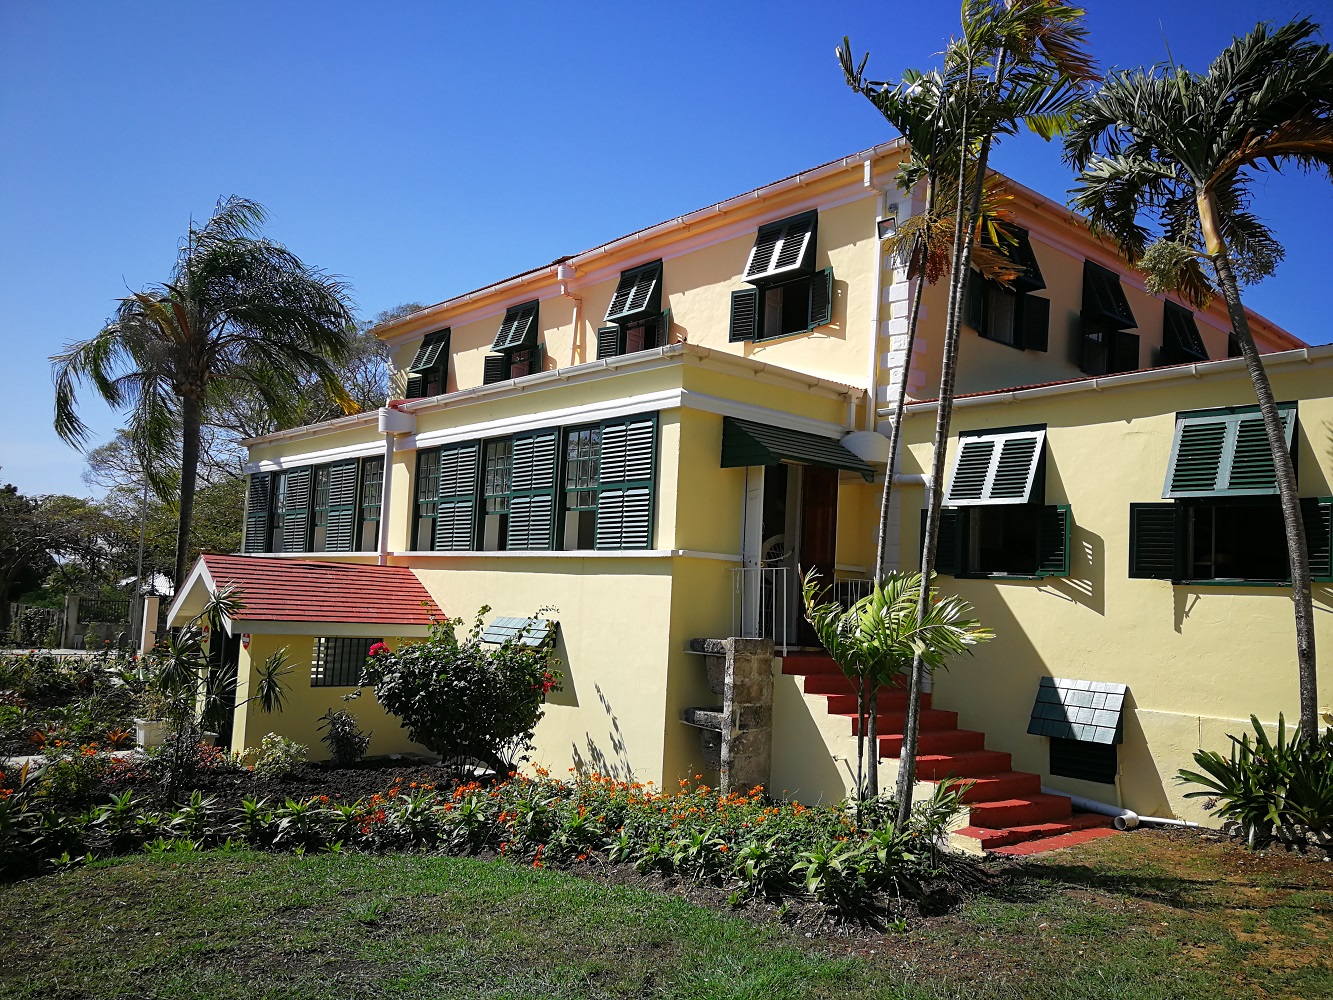 Mein Schiff Ausflug: Das Plantagenhaus Sunbury auf Barbados